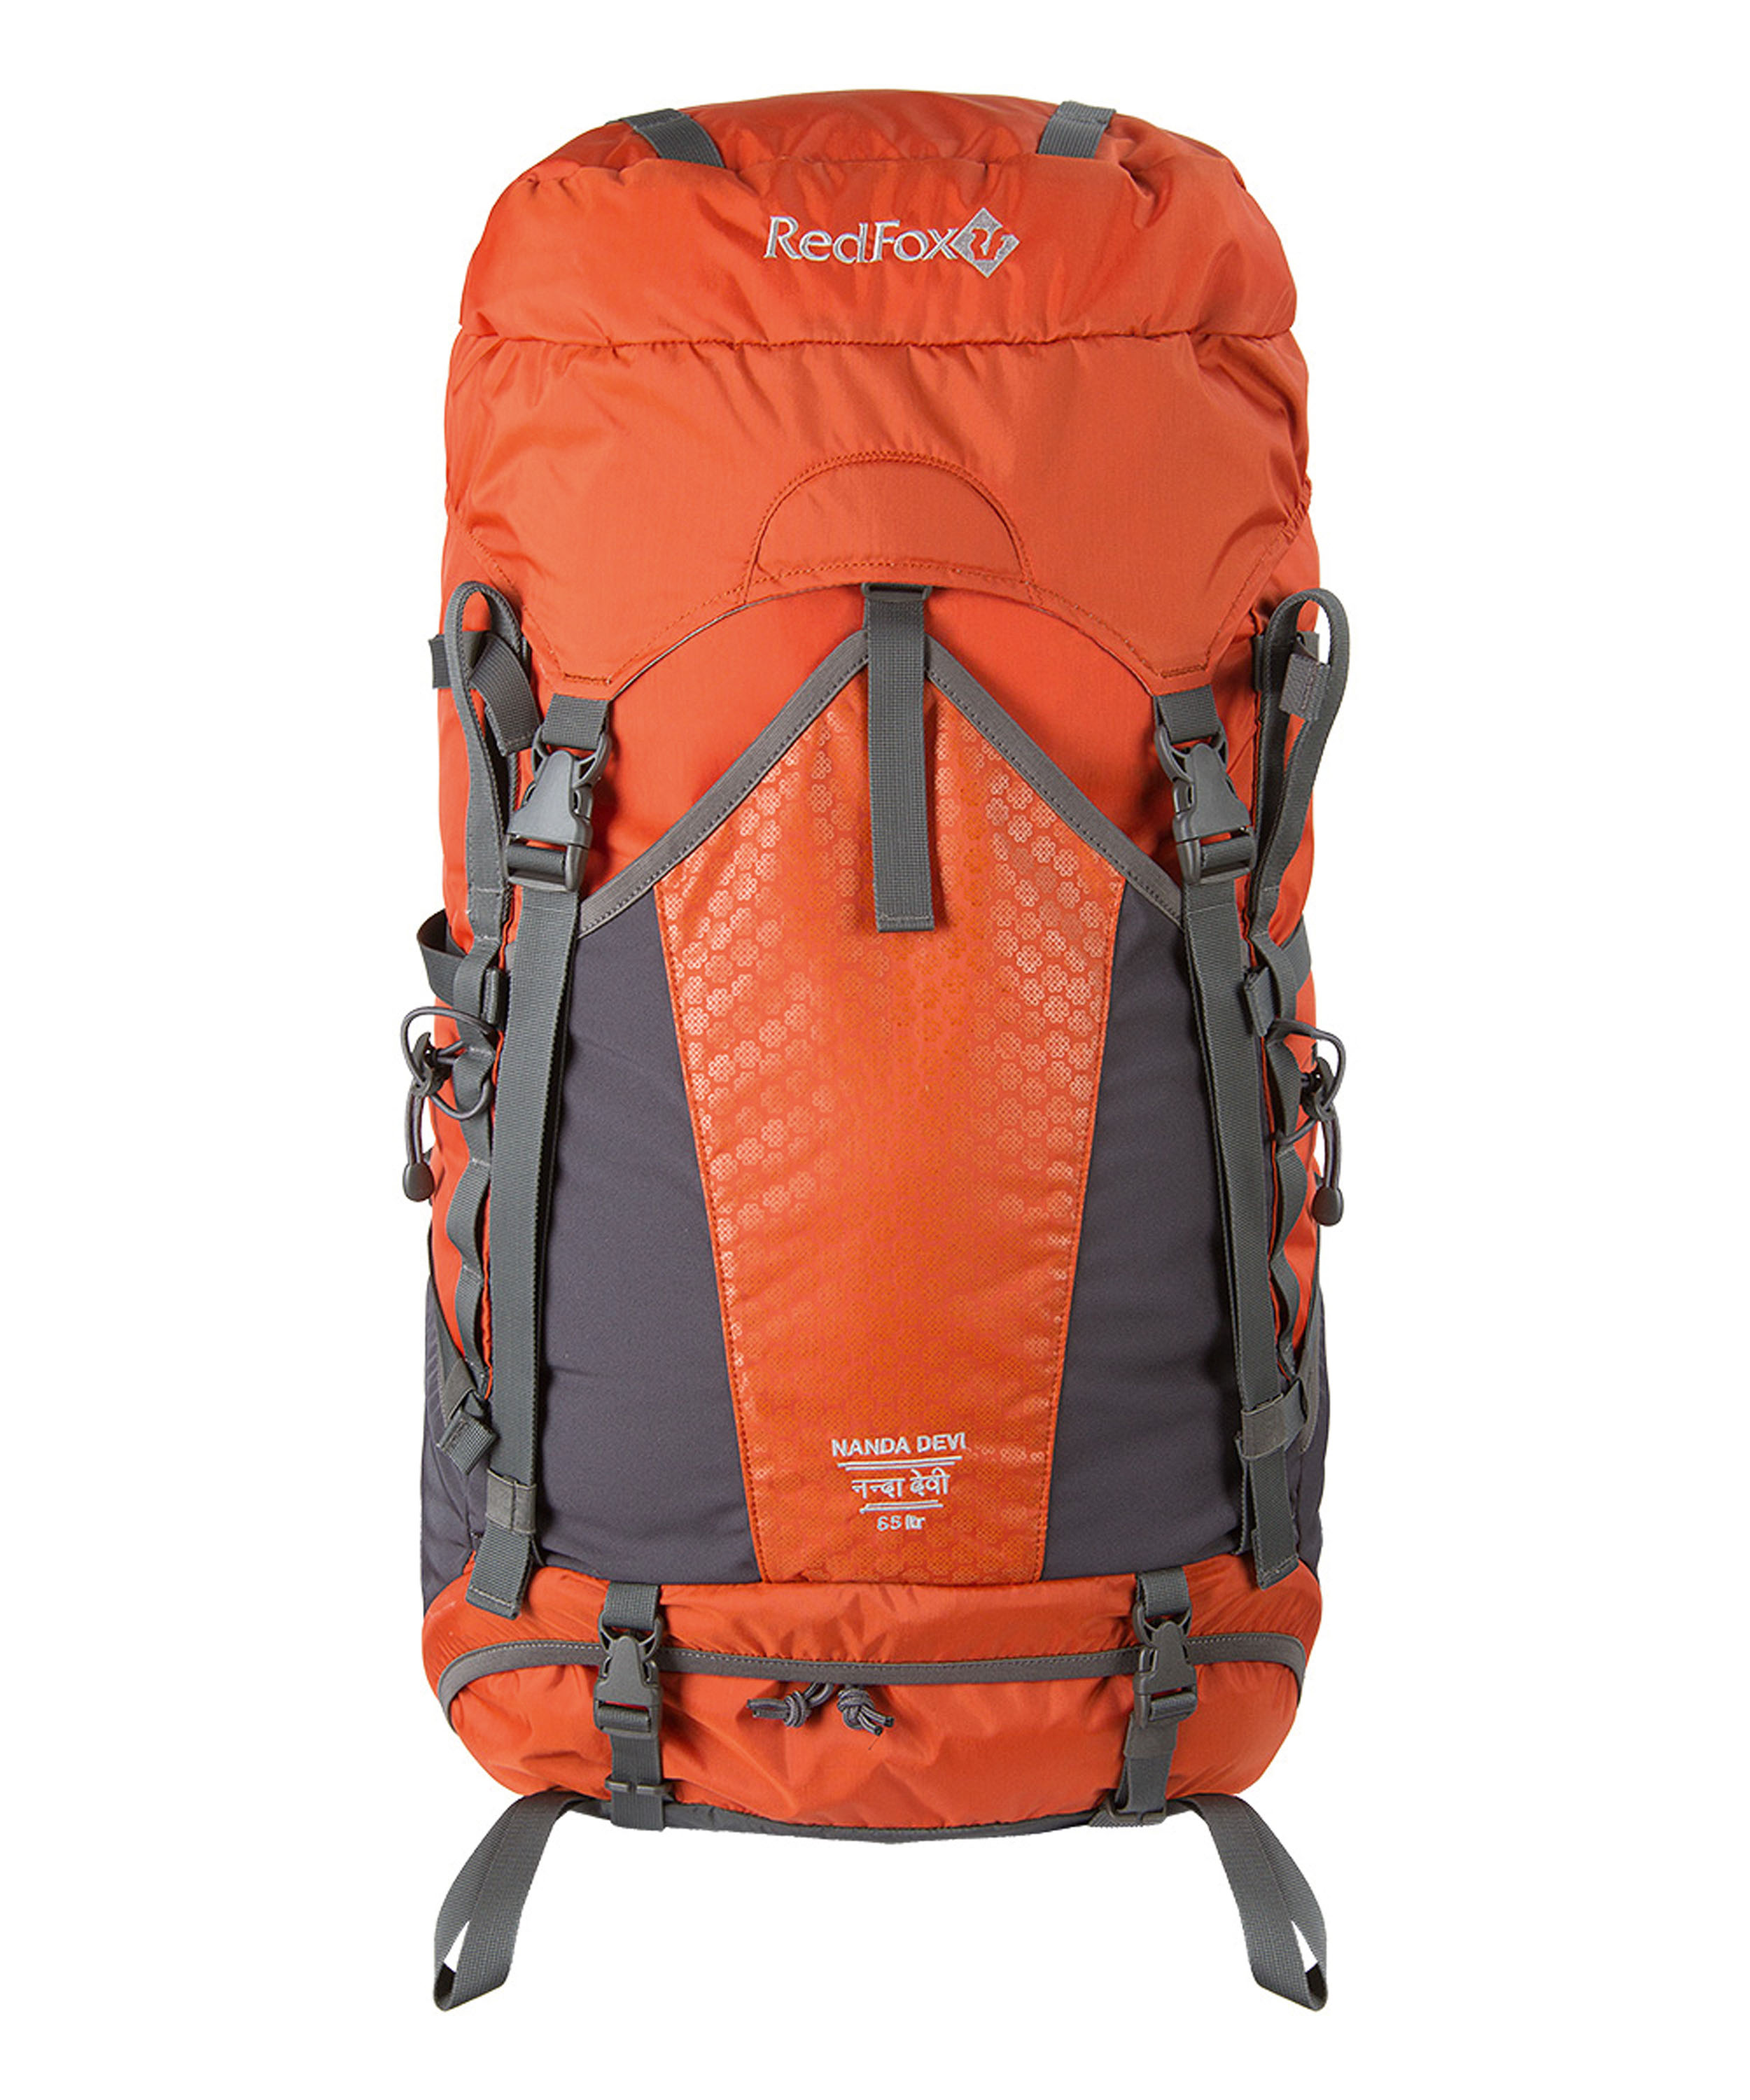 Red Fox Nanda Devi 65 Frauenpower! Ein spezieller Rucksack für die Trekkerin mit einem sattenVolumen von 65 Litern. Groß genug für eine komplette Tourenausrüstung, und wenn das immer noch nicht reicht, gibt es noch das Steckfach vorne. 230,00 Euro